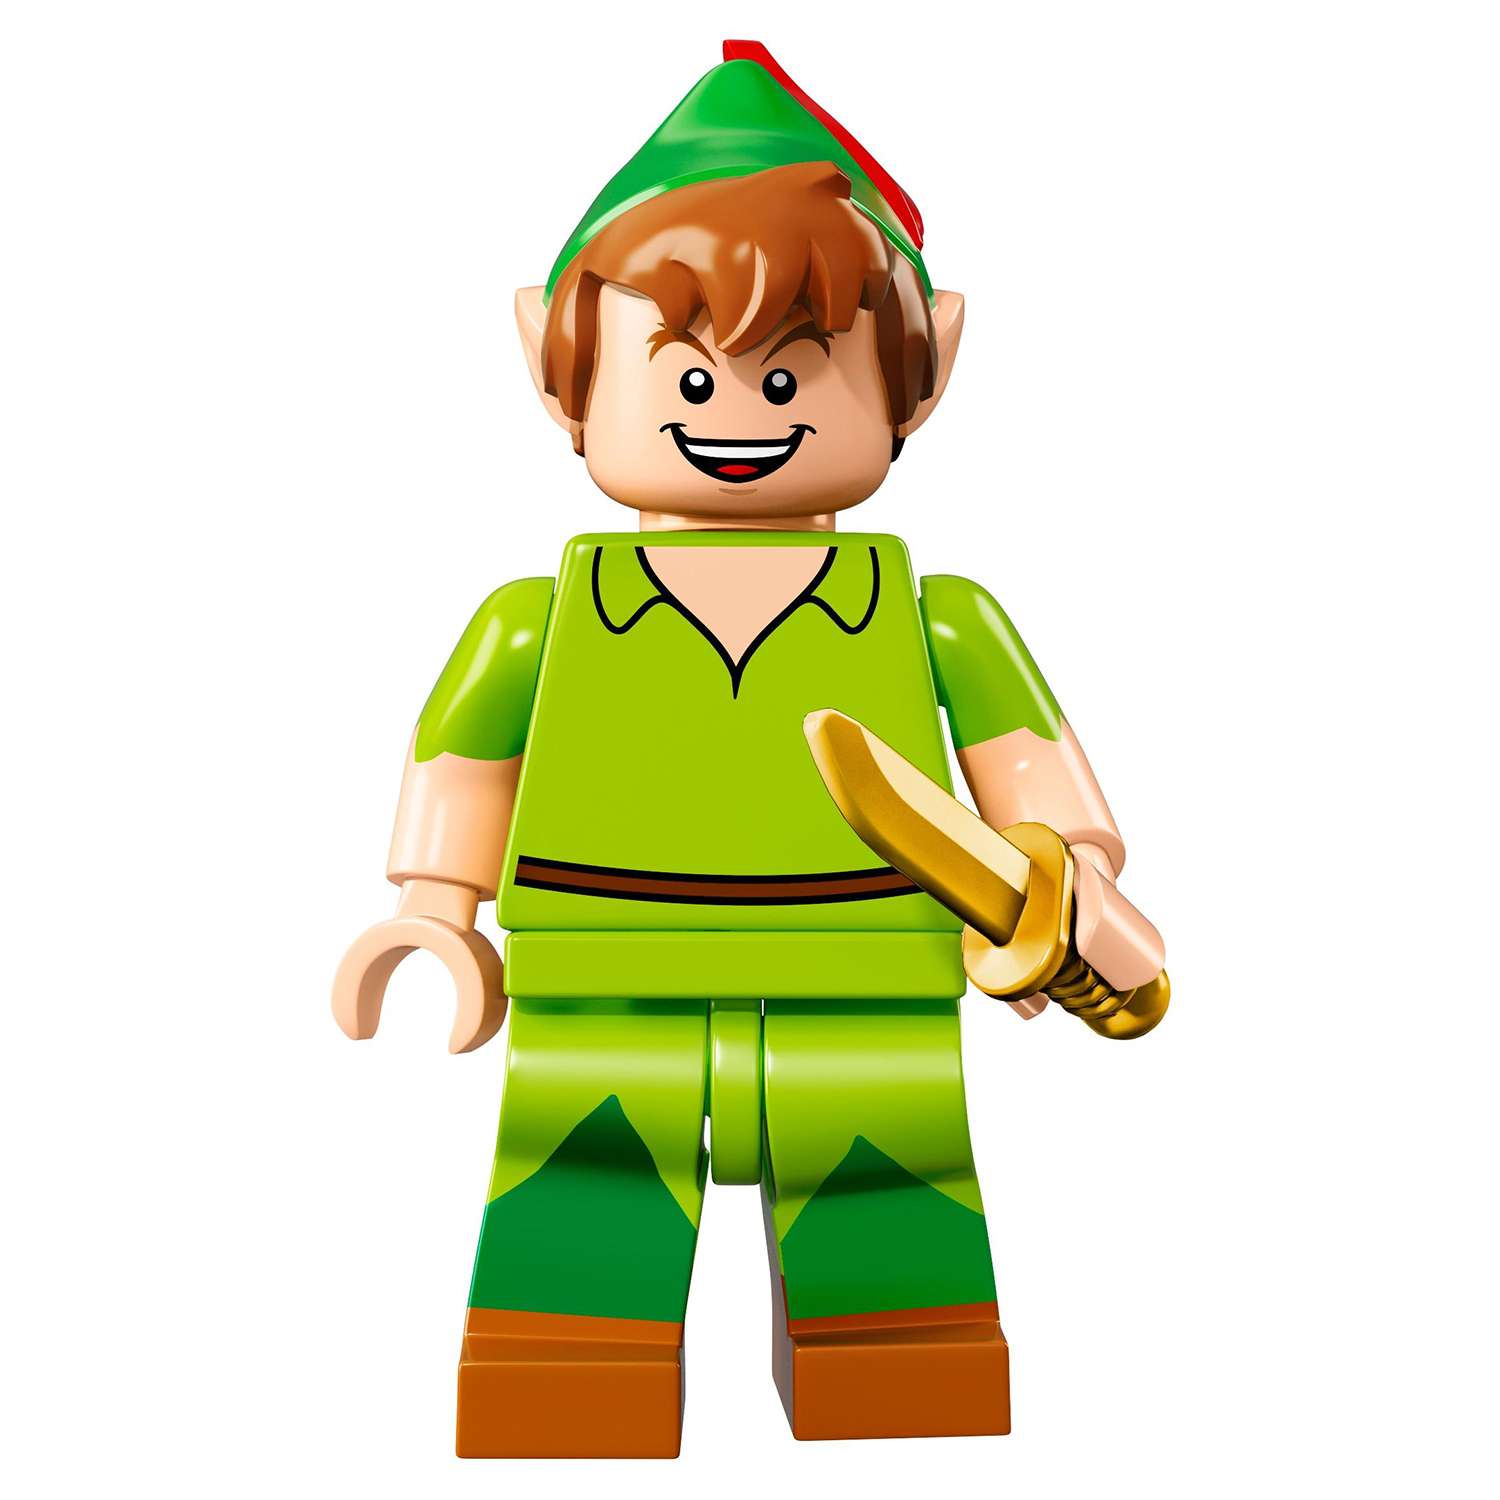 Конструктор LEGO Minifigures Минифигурки LEGO®, серия Дисней (71012) - фото 27